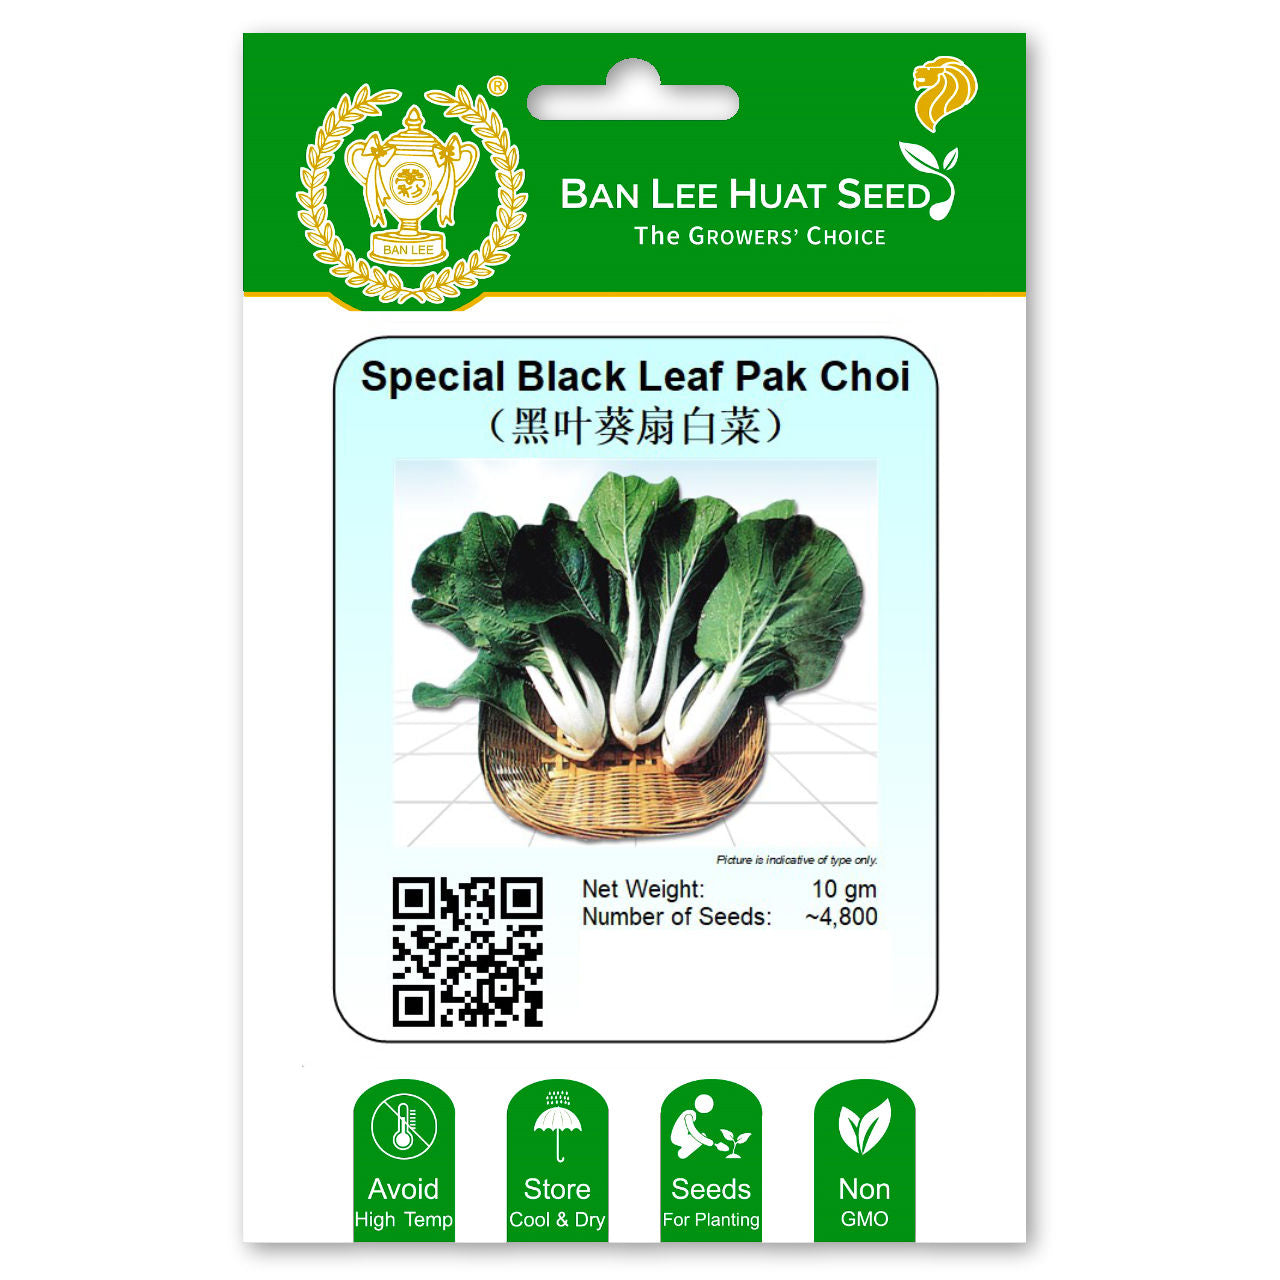 Special Black Leaf Pak Choi Seed